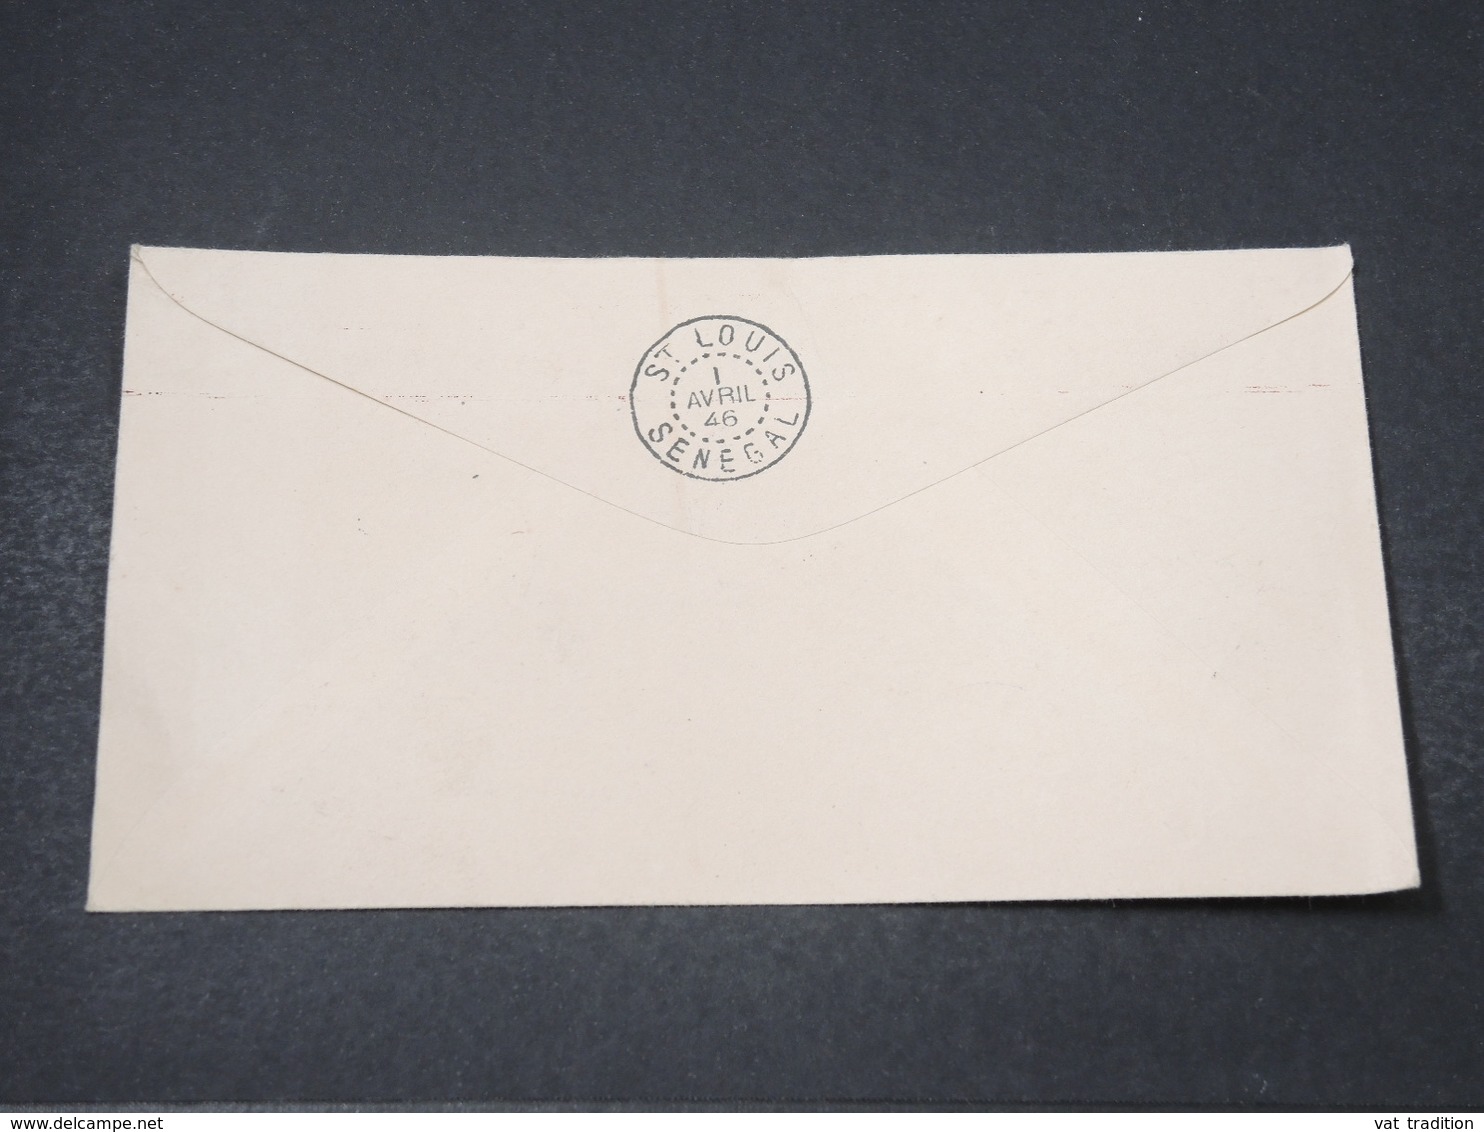 MAURITANIE - Enveloppe De La Foire Exposition Du Trarza à Rosso En 1946 - L 16868 - Lettres & Documents